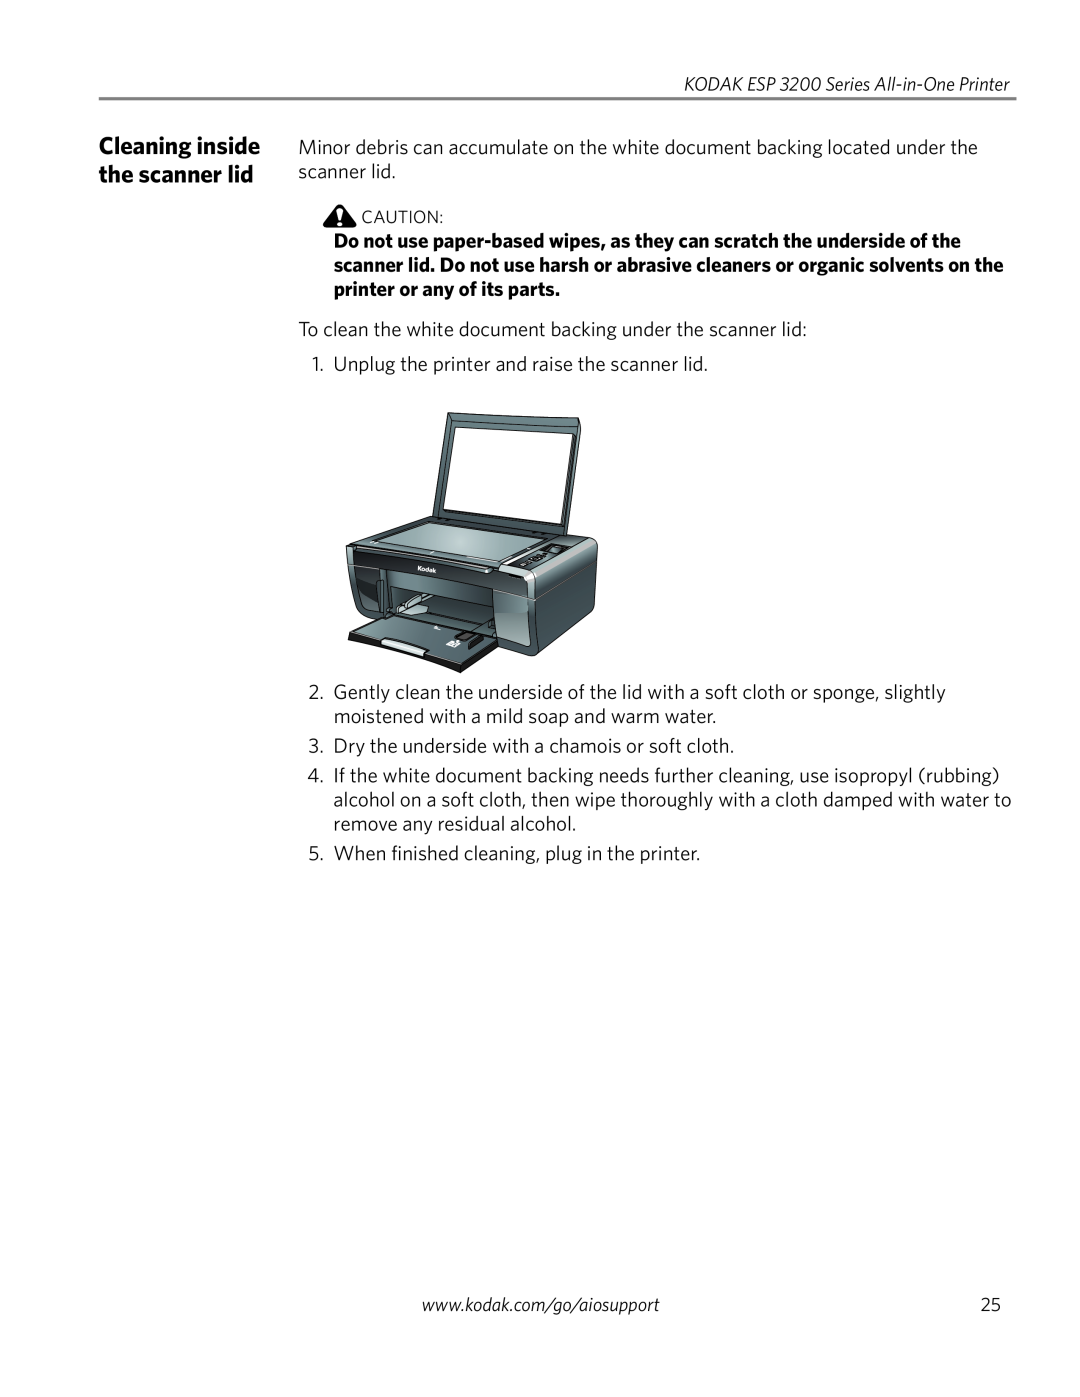 Kodak ESP 3200 Series, ESP 3260, ESP 3250 manual Cleaning inside the scanner lid 